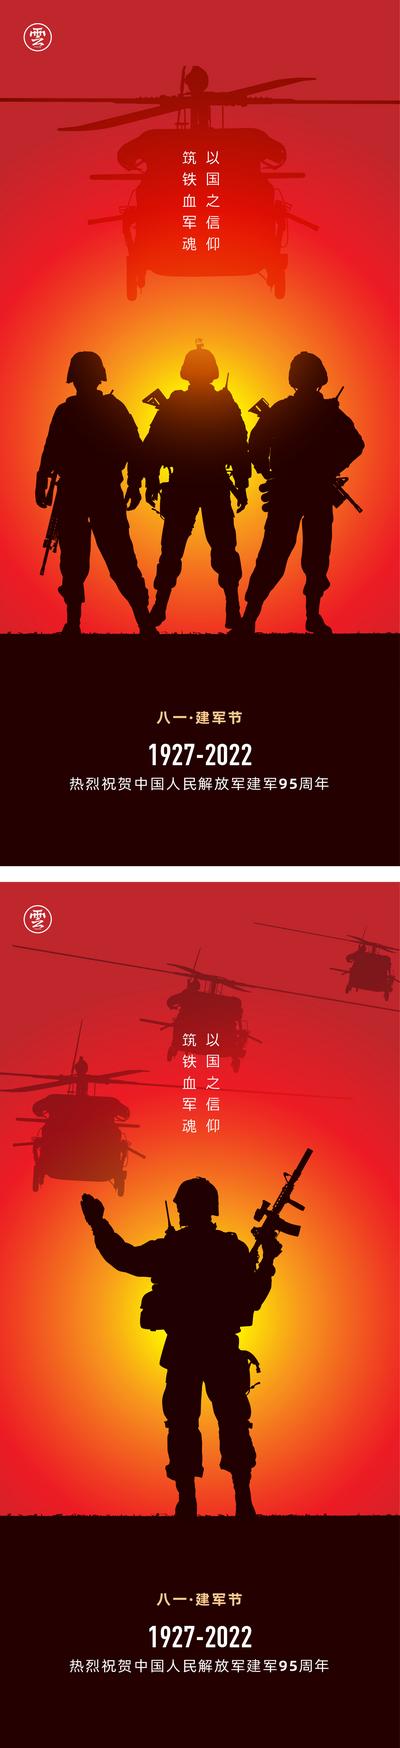 南门网 海报 公历节日 81 八一 建军节 剪影 95周年 士兵 战士 飞机 光